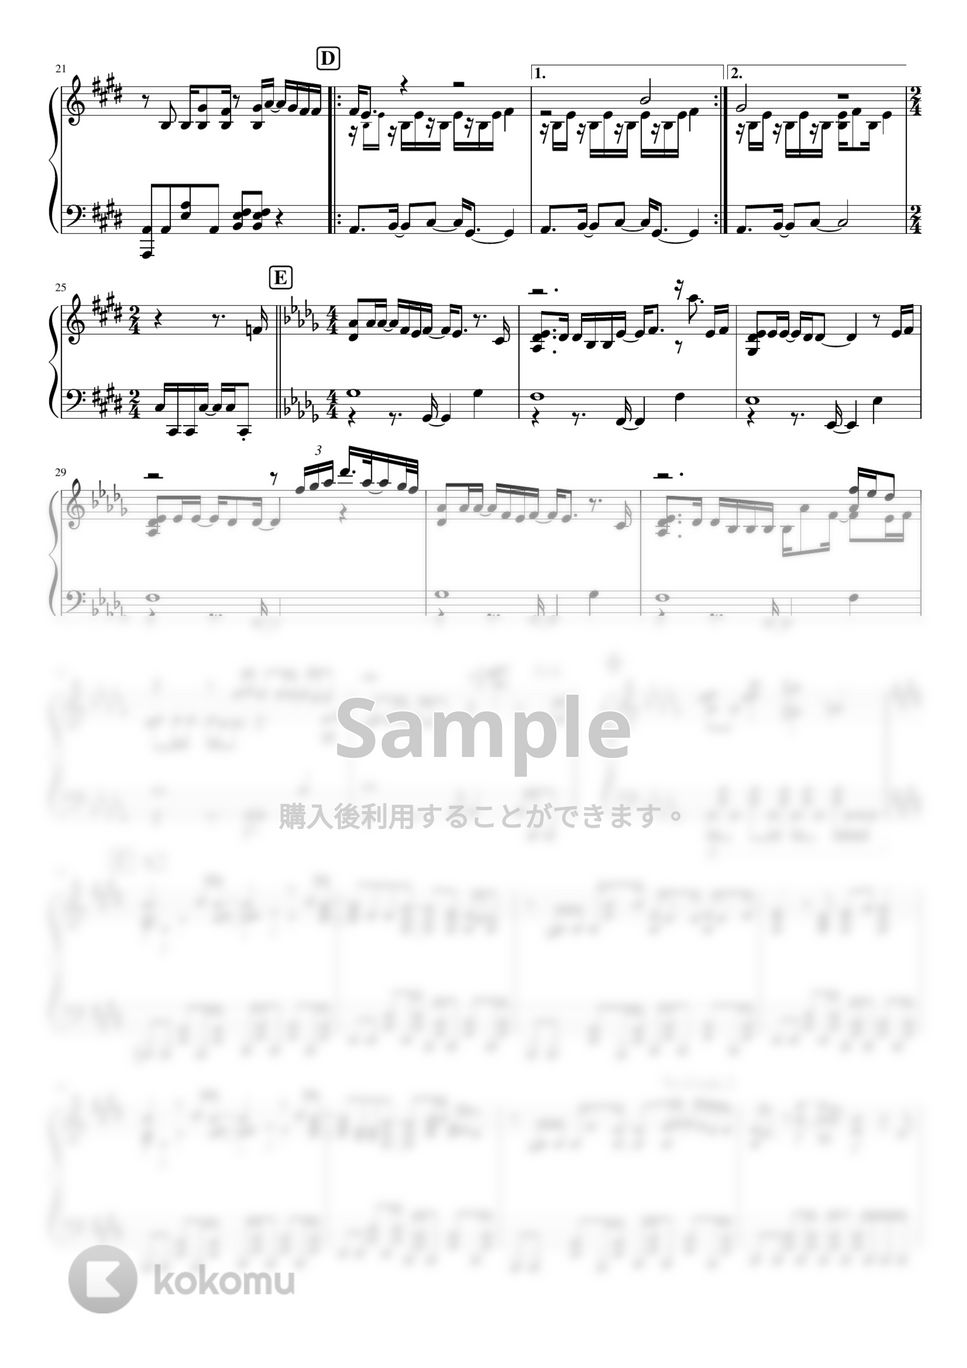 ヨルシカ - ノーチラス by pianomikan